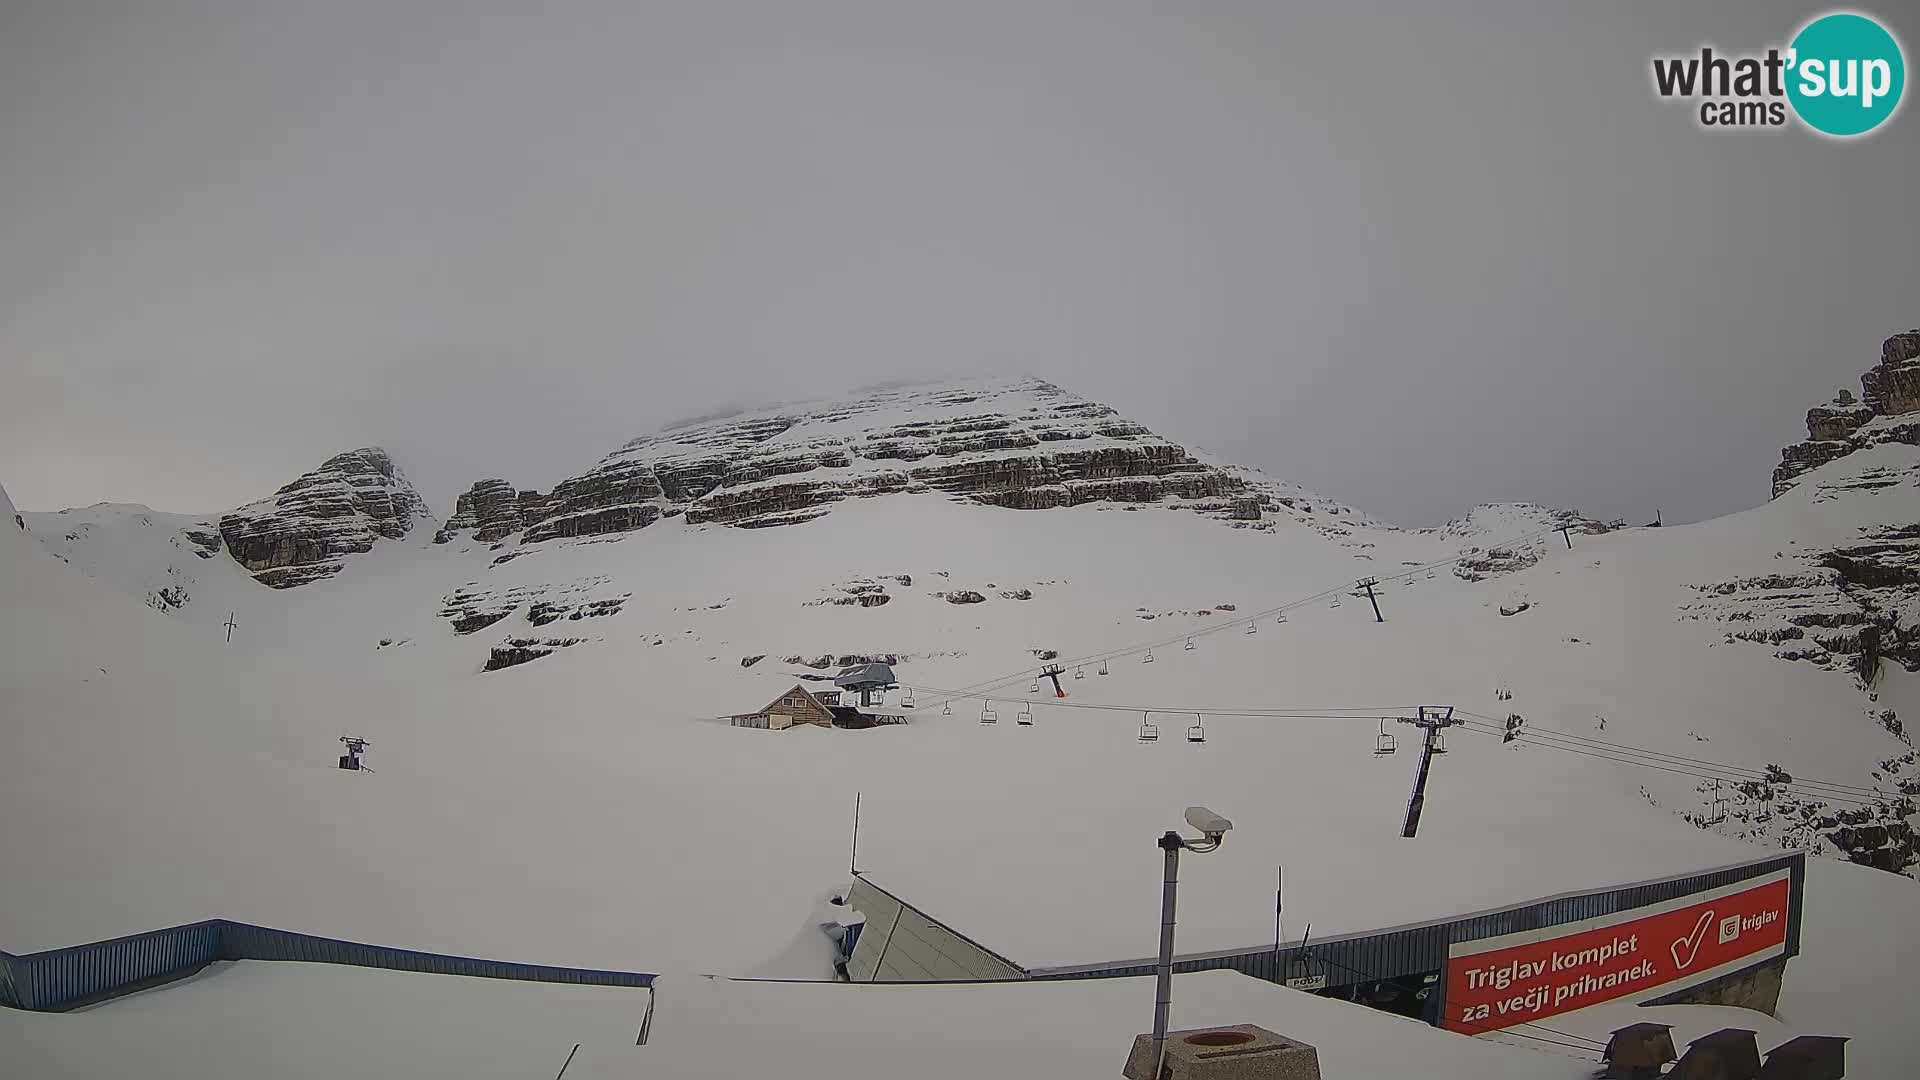 Station de ski Kanin – Prestreljenik